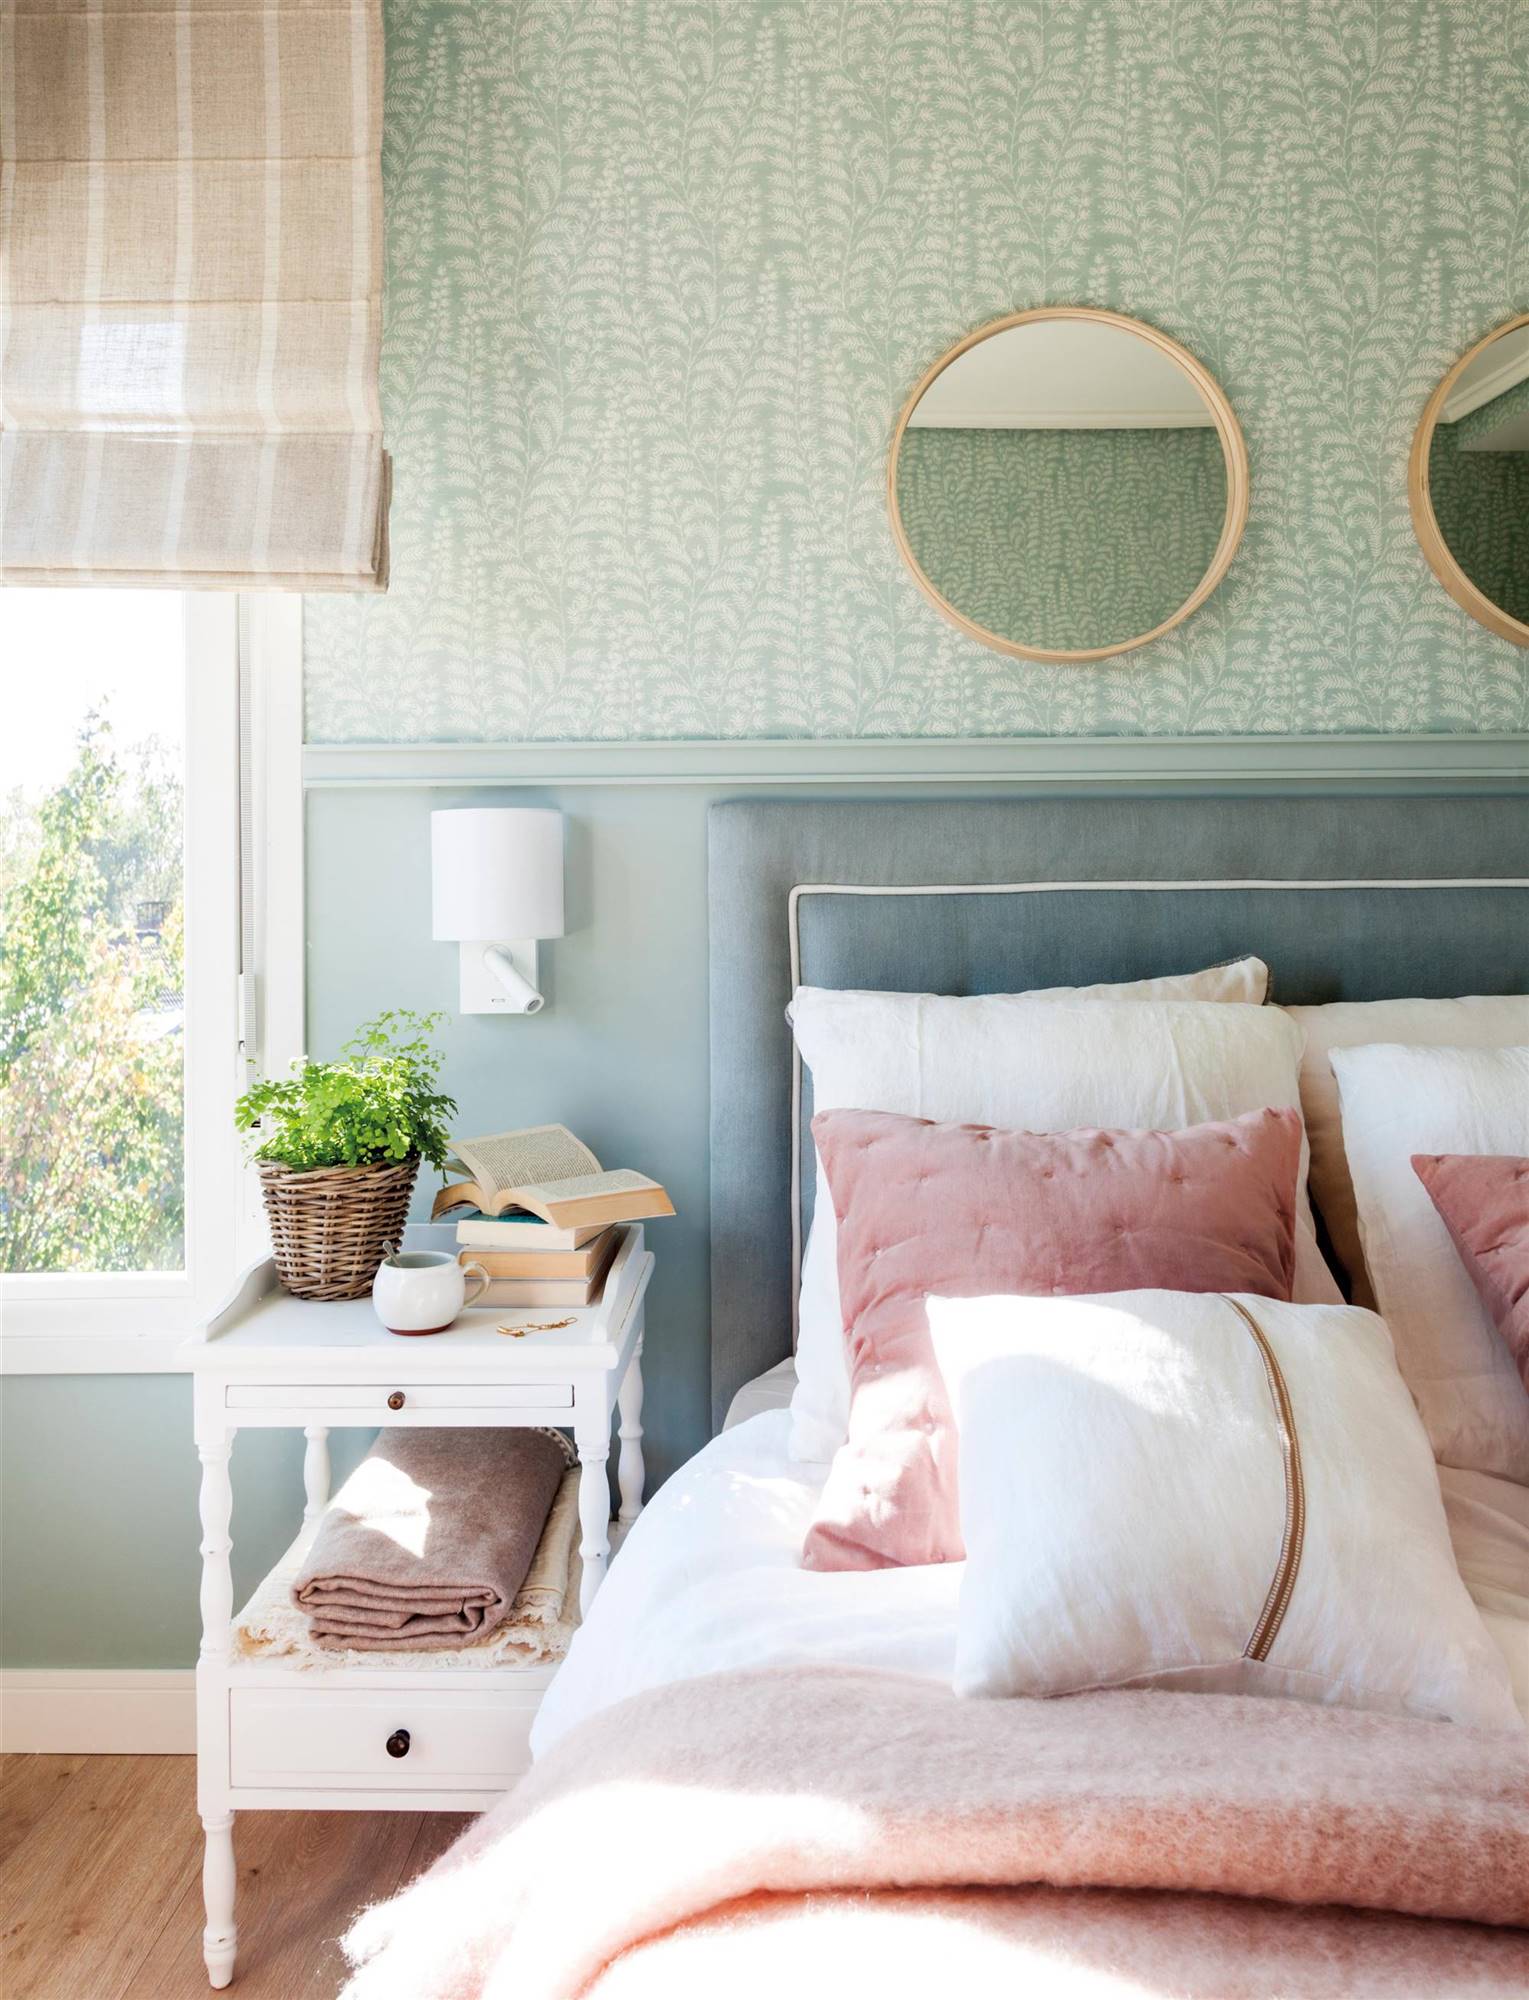 Dormitorio con papel pintado y zócalo de madera lacada en la misma gama de color.